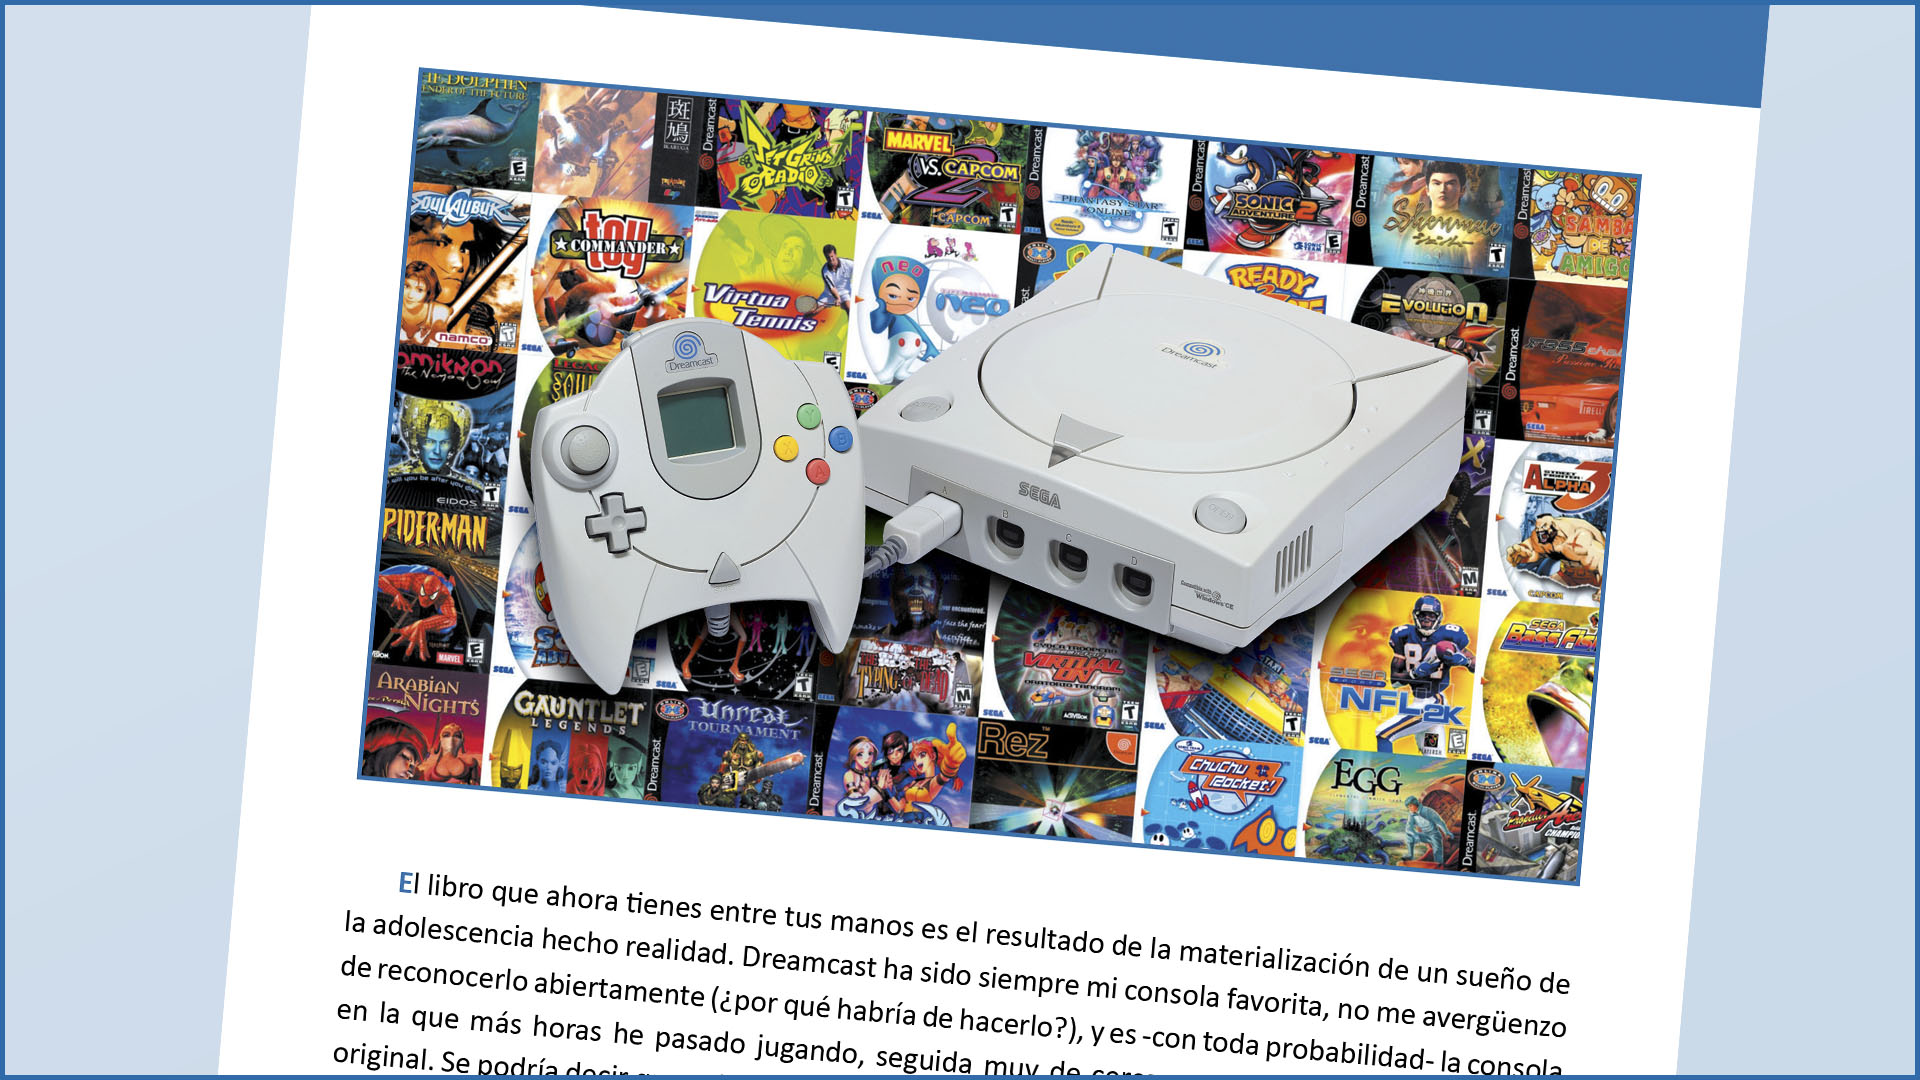 Dreamcast: El sueño eterno